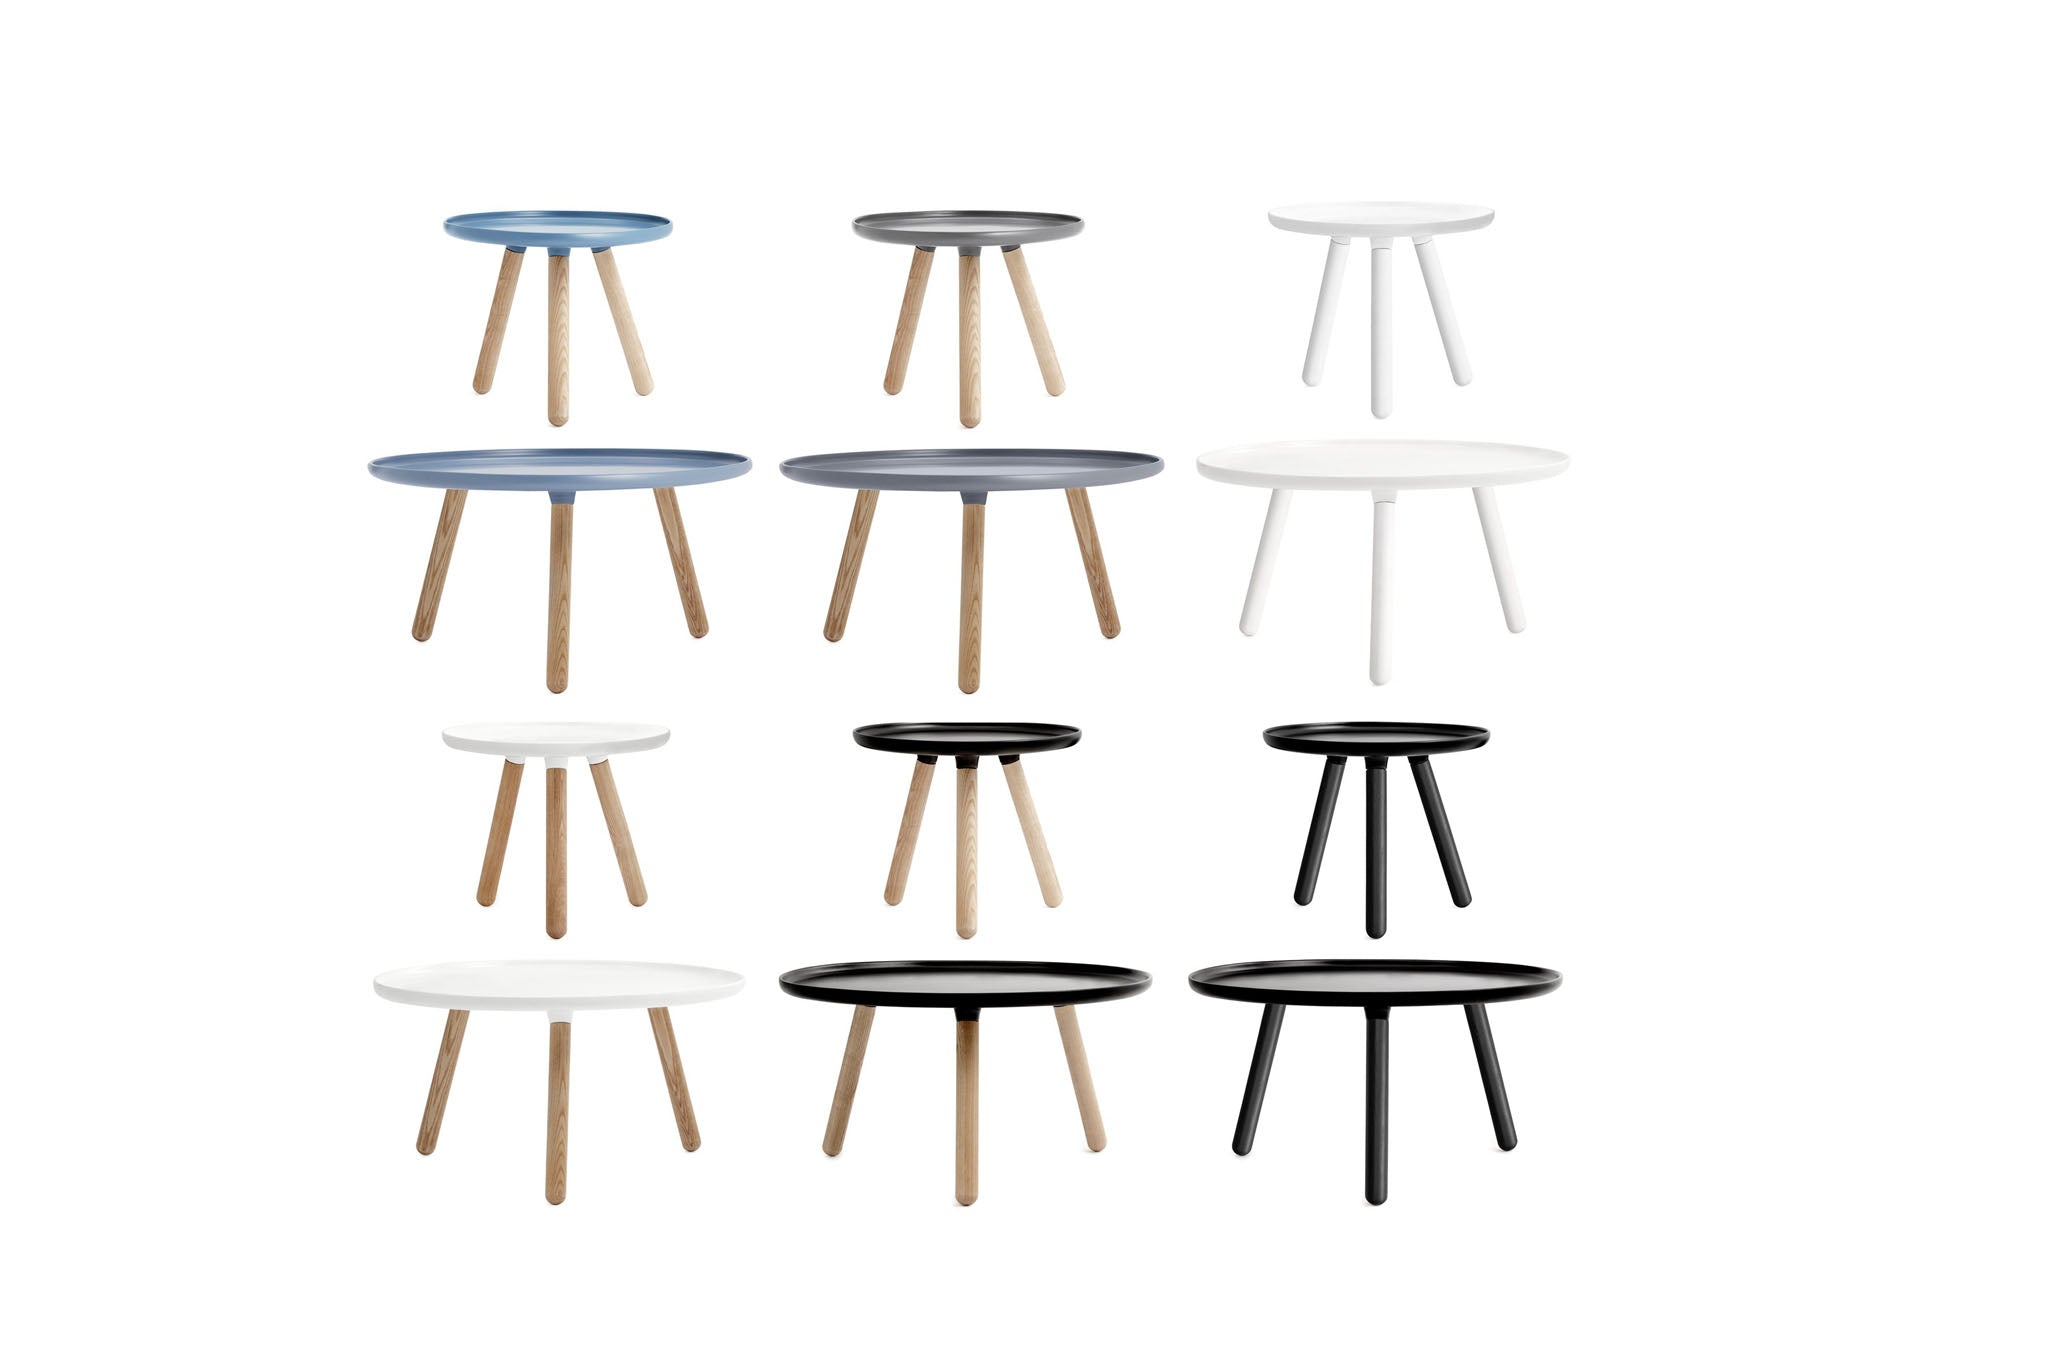 Tablo Tisch klein - KAQTU Design